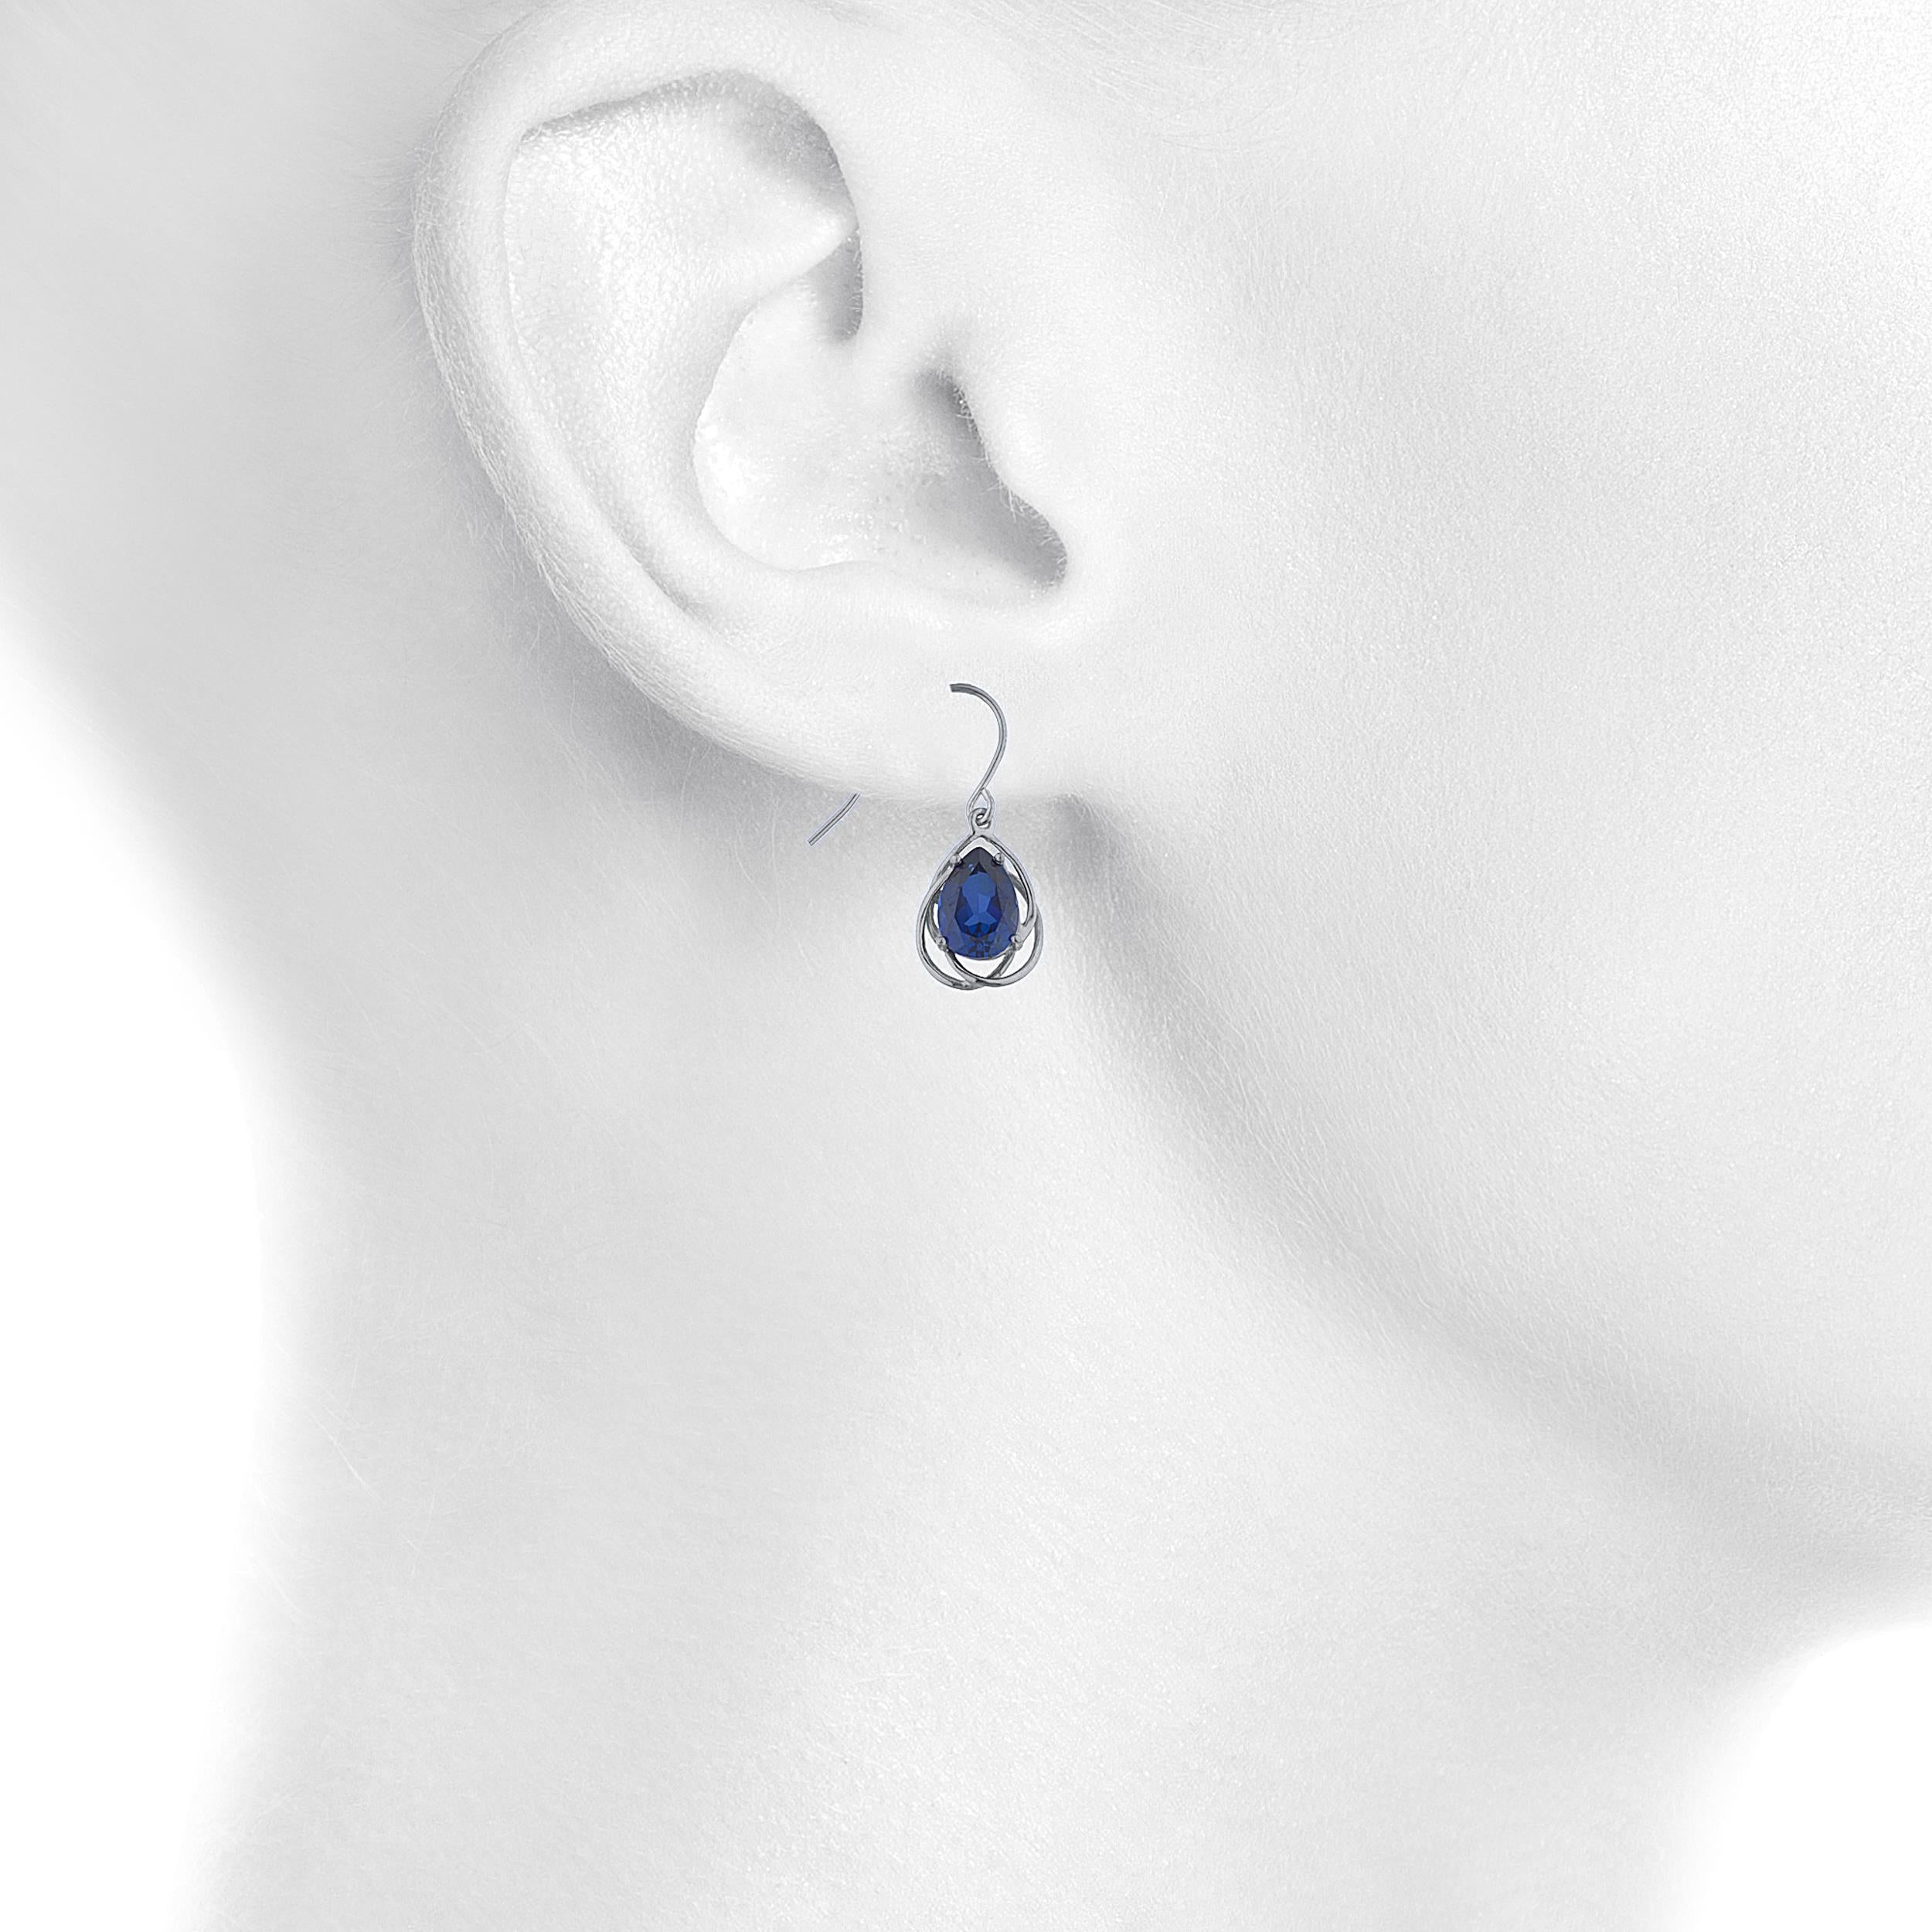 14Kt Gold 4 Ct Blue Sapphire Pear Teardrop Design Dangle Earrings